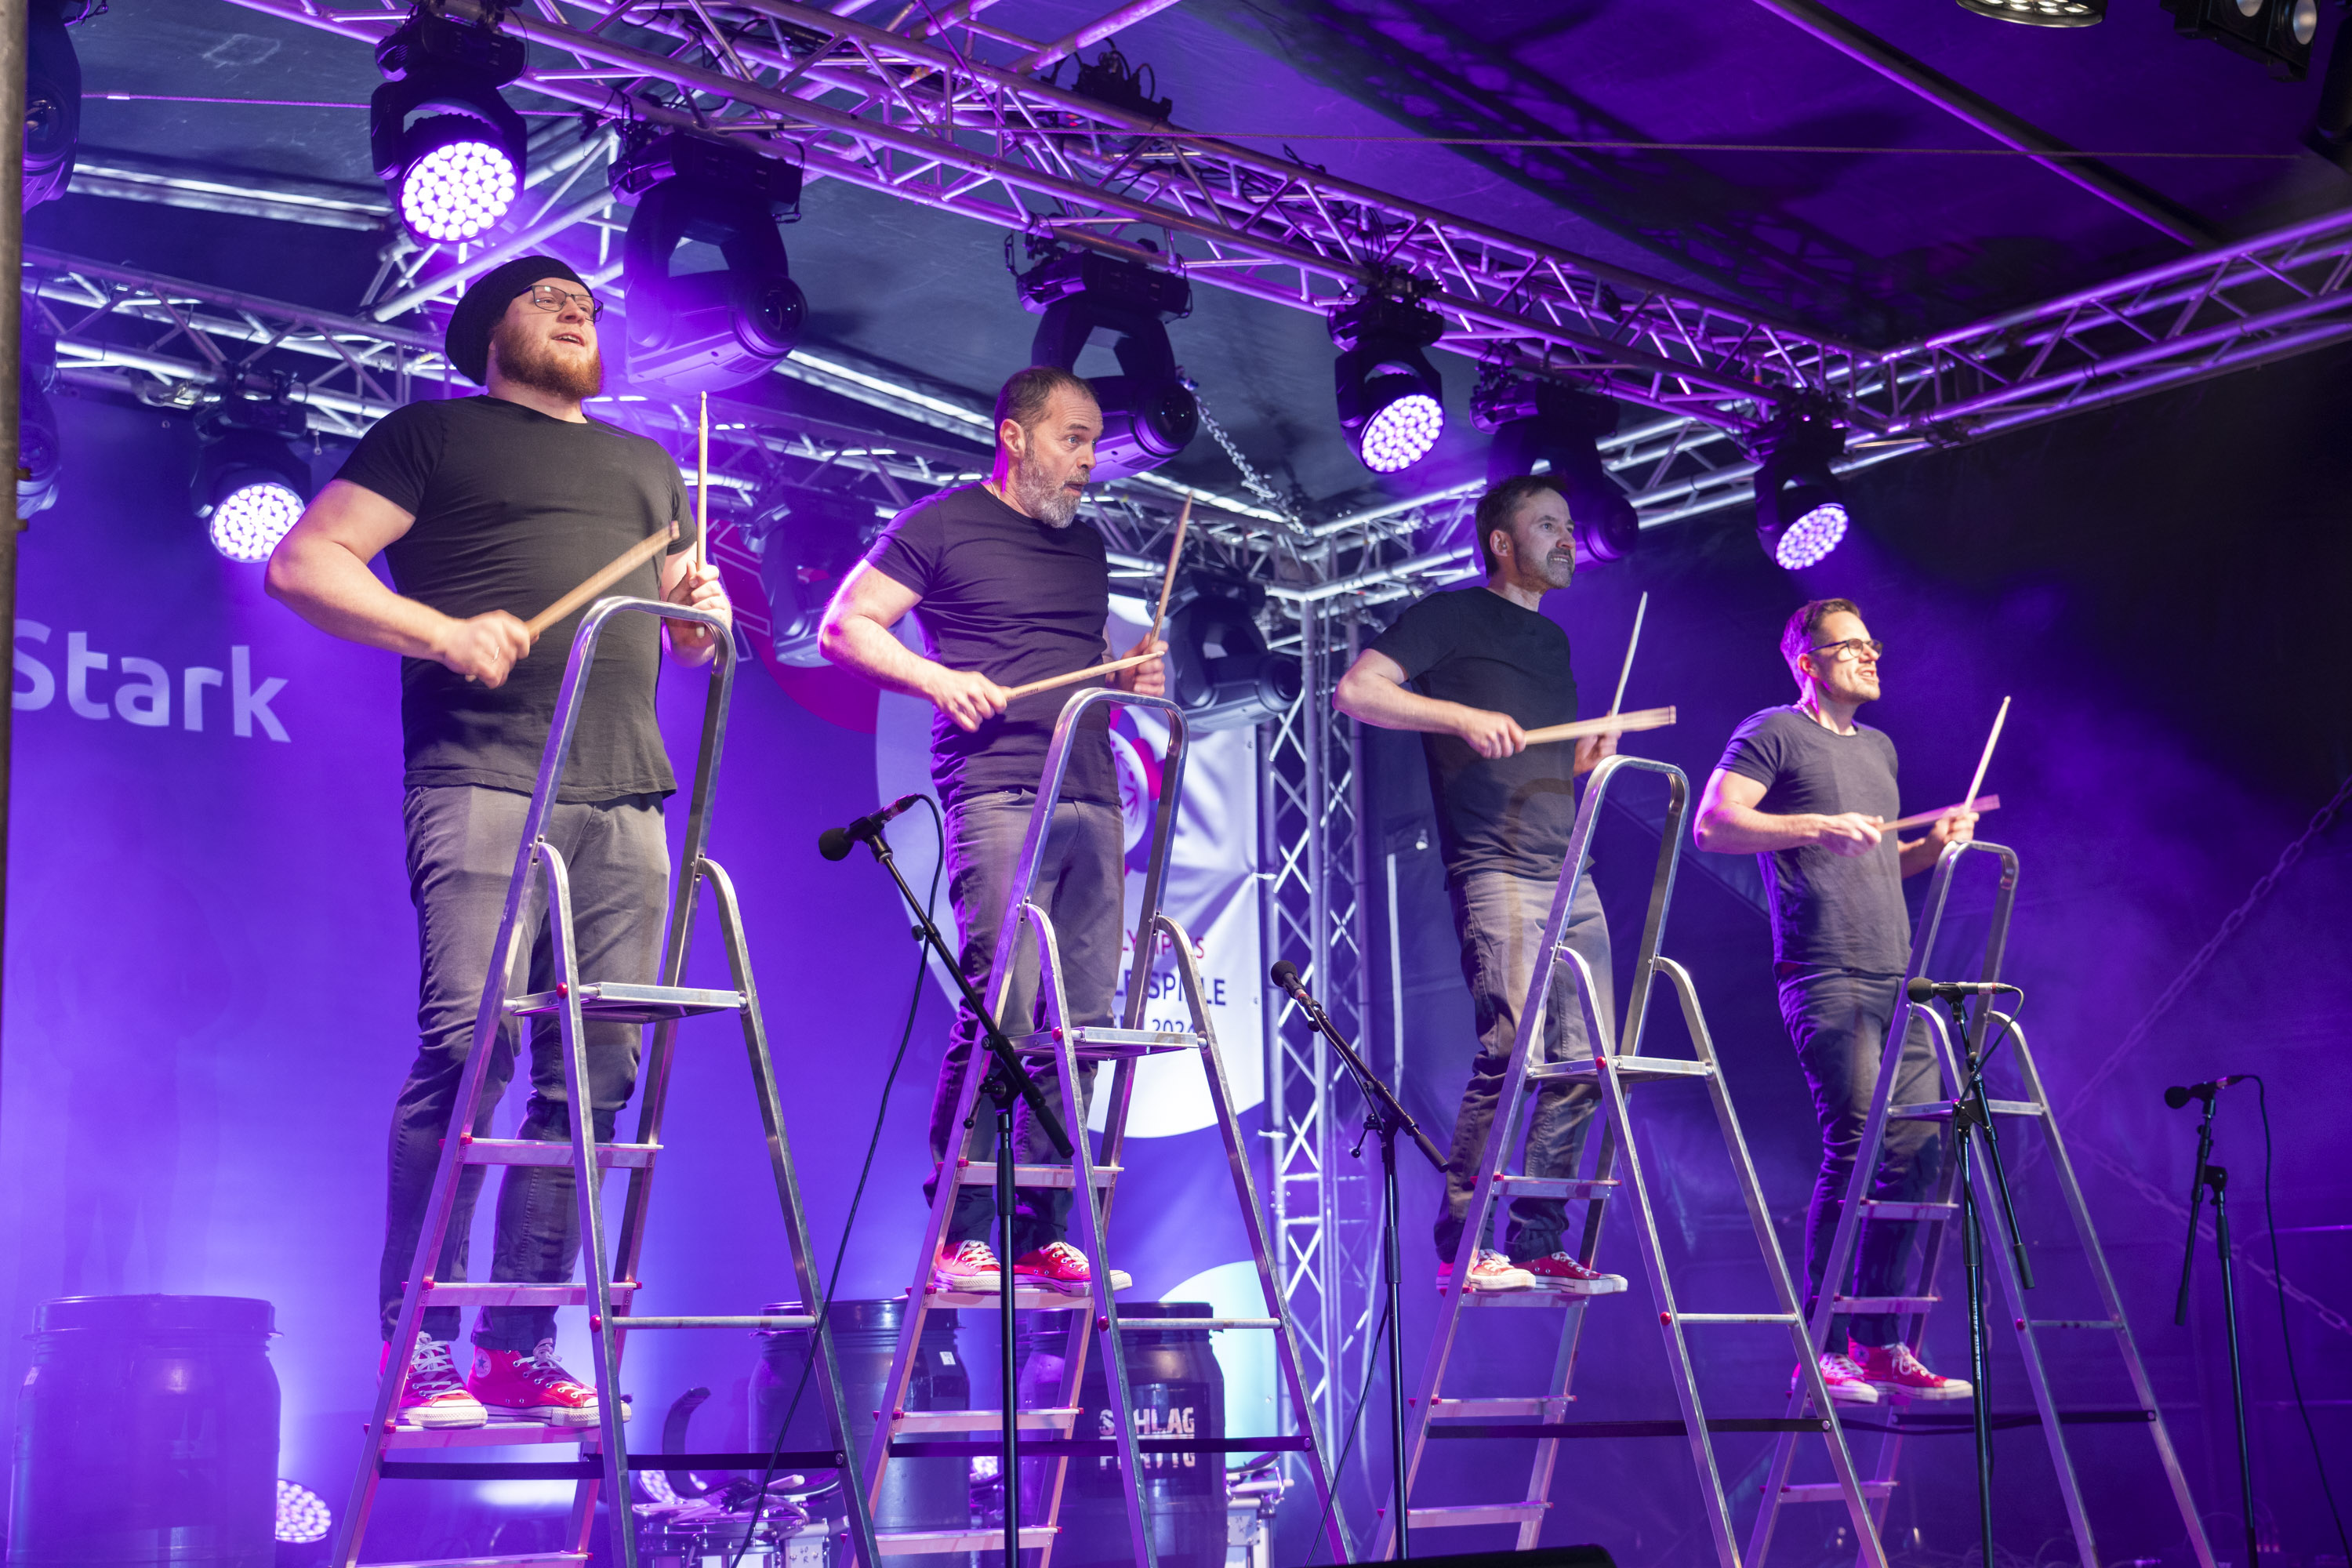 4 Trommler stehen auf Leitern auf einer Bühne und Trommeln mit Stöcken auf die Leitern.